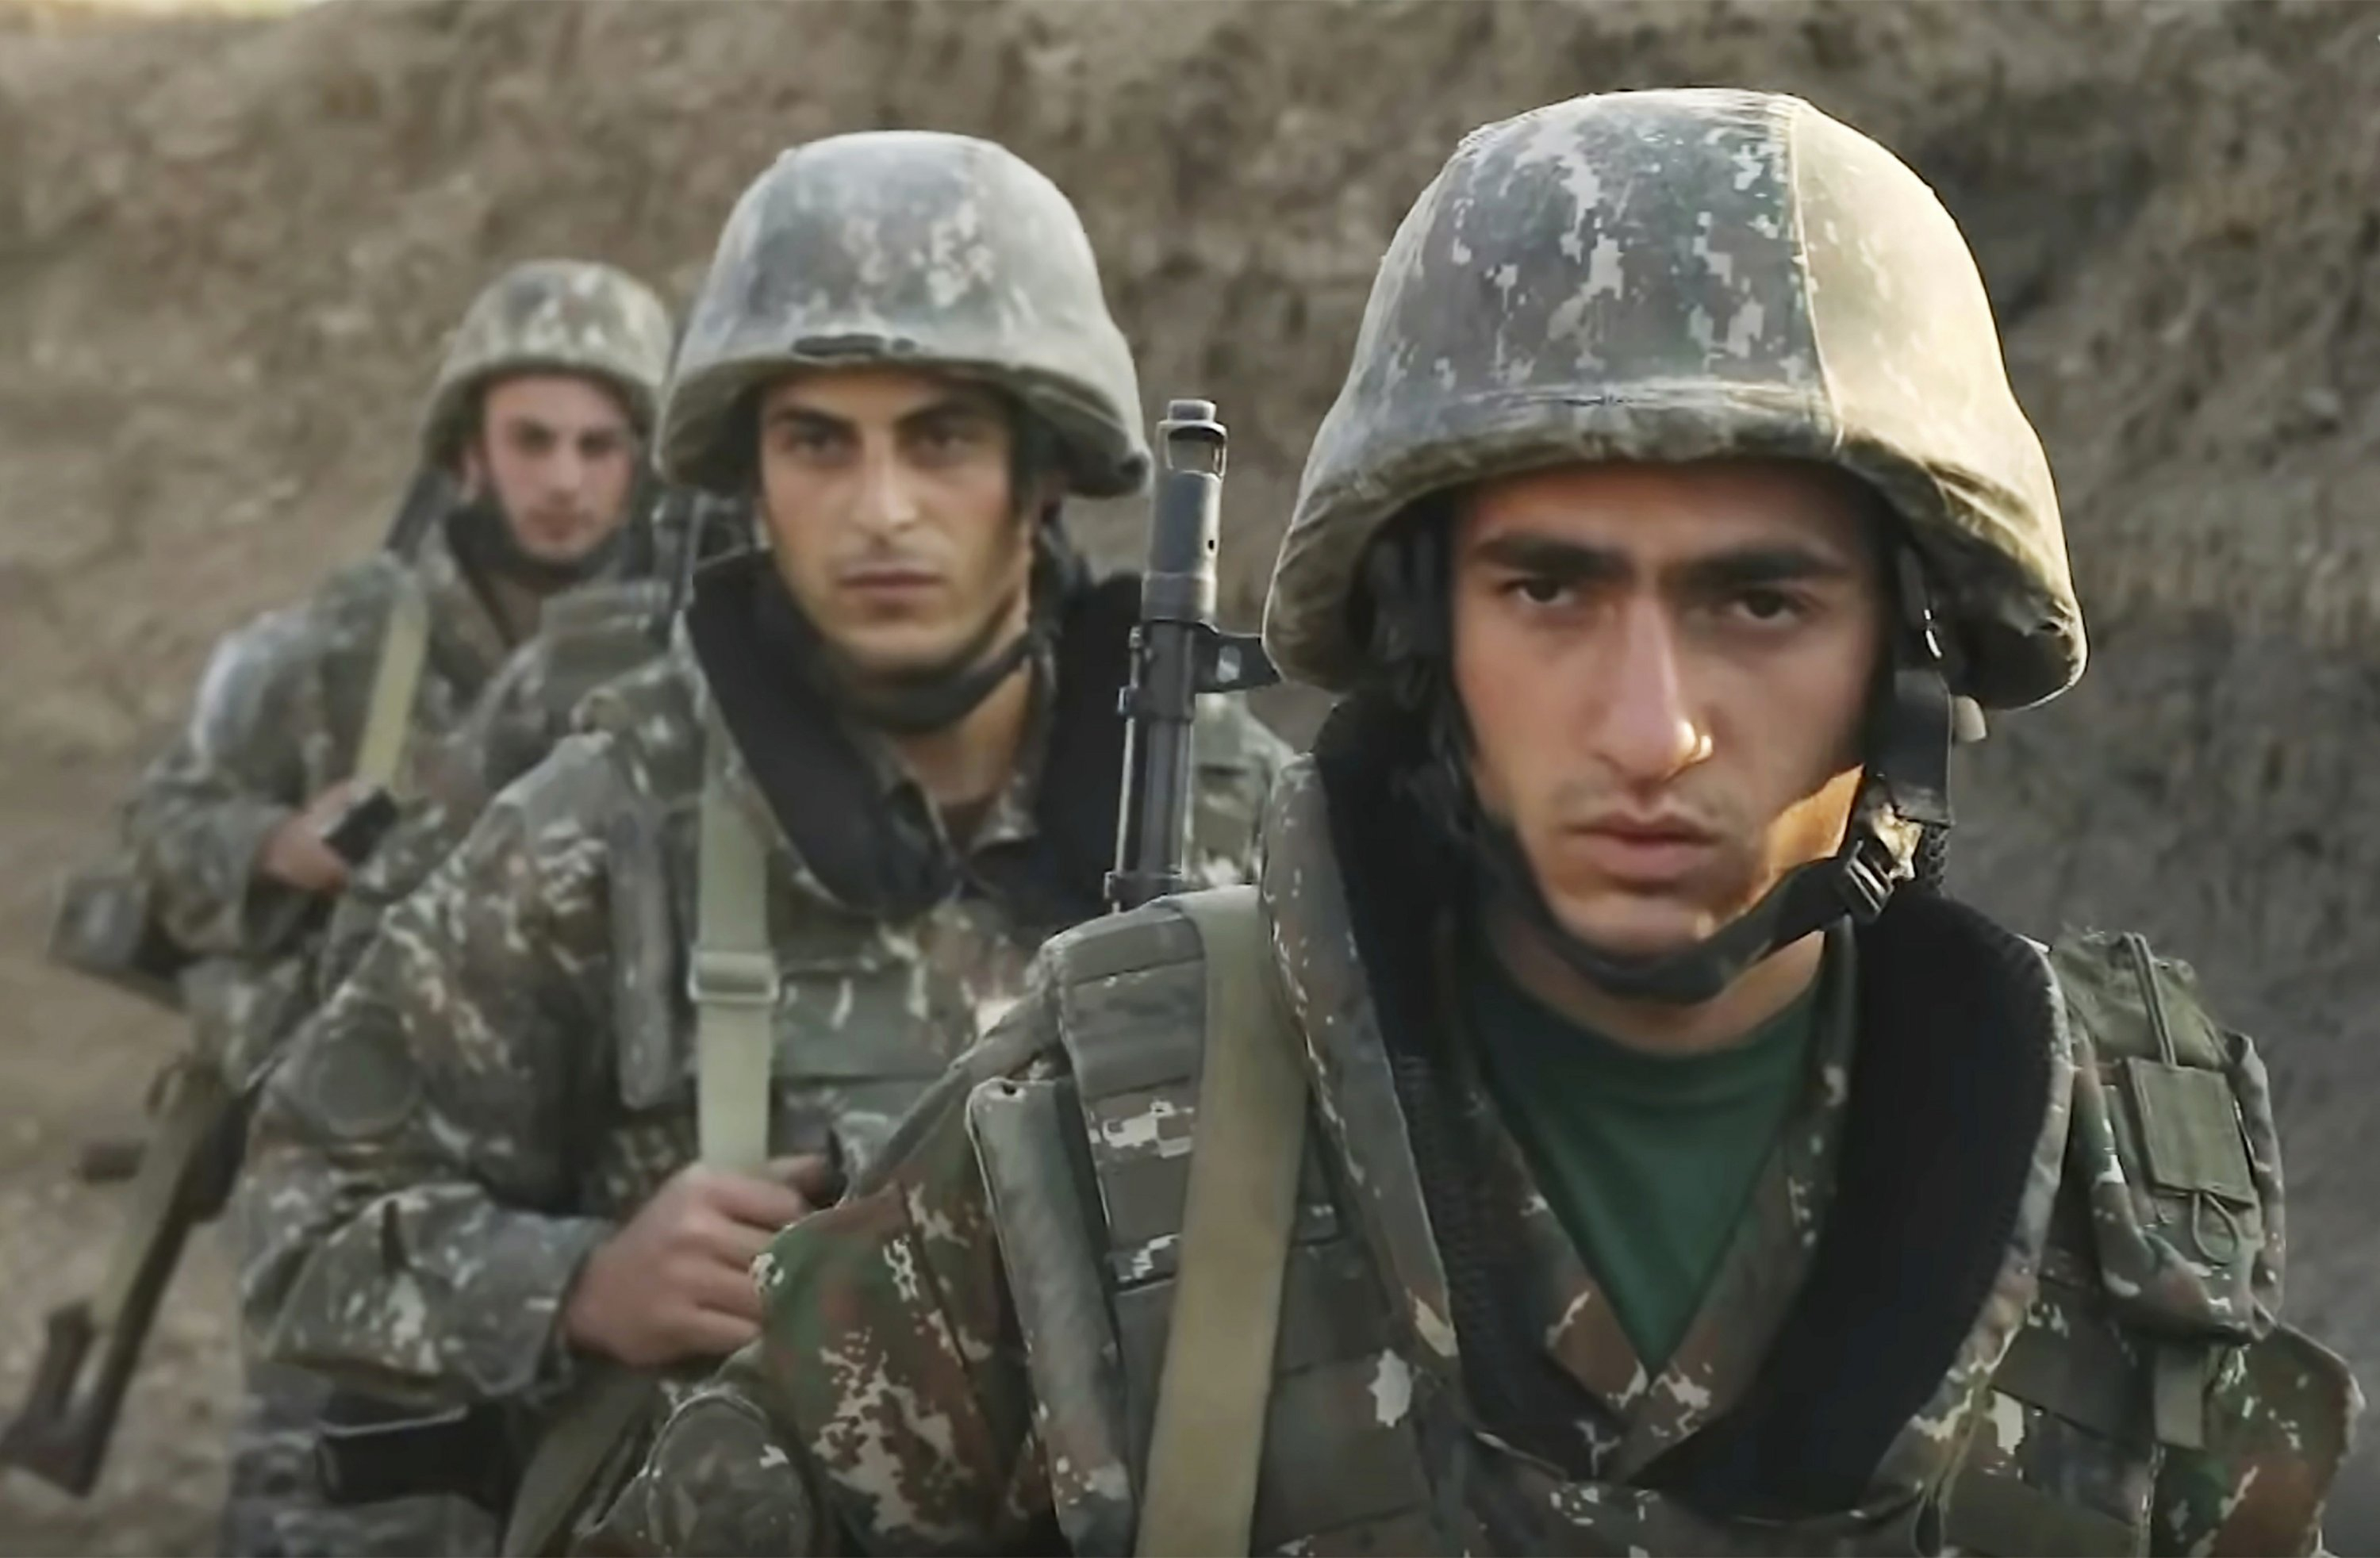 Ermənistanın silahlı qüvvələrinin Dağlıq Qarabağdan çıxarılmasına başlanılıb - VİDEO